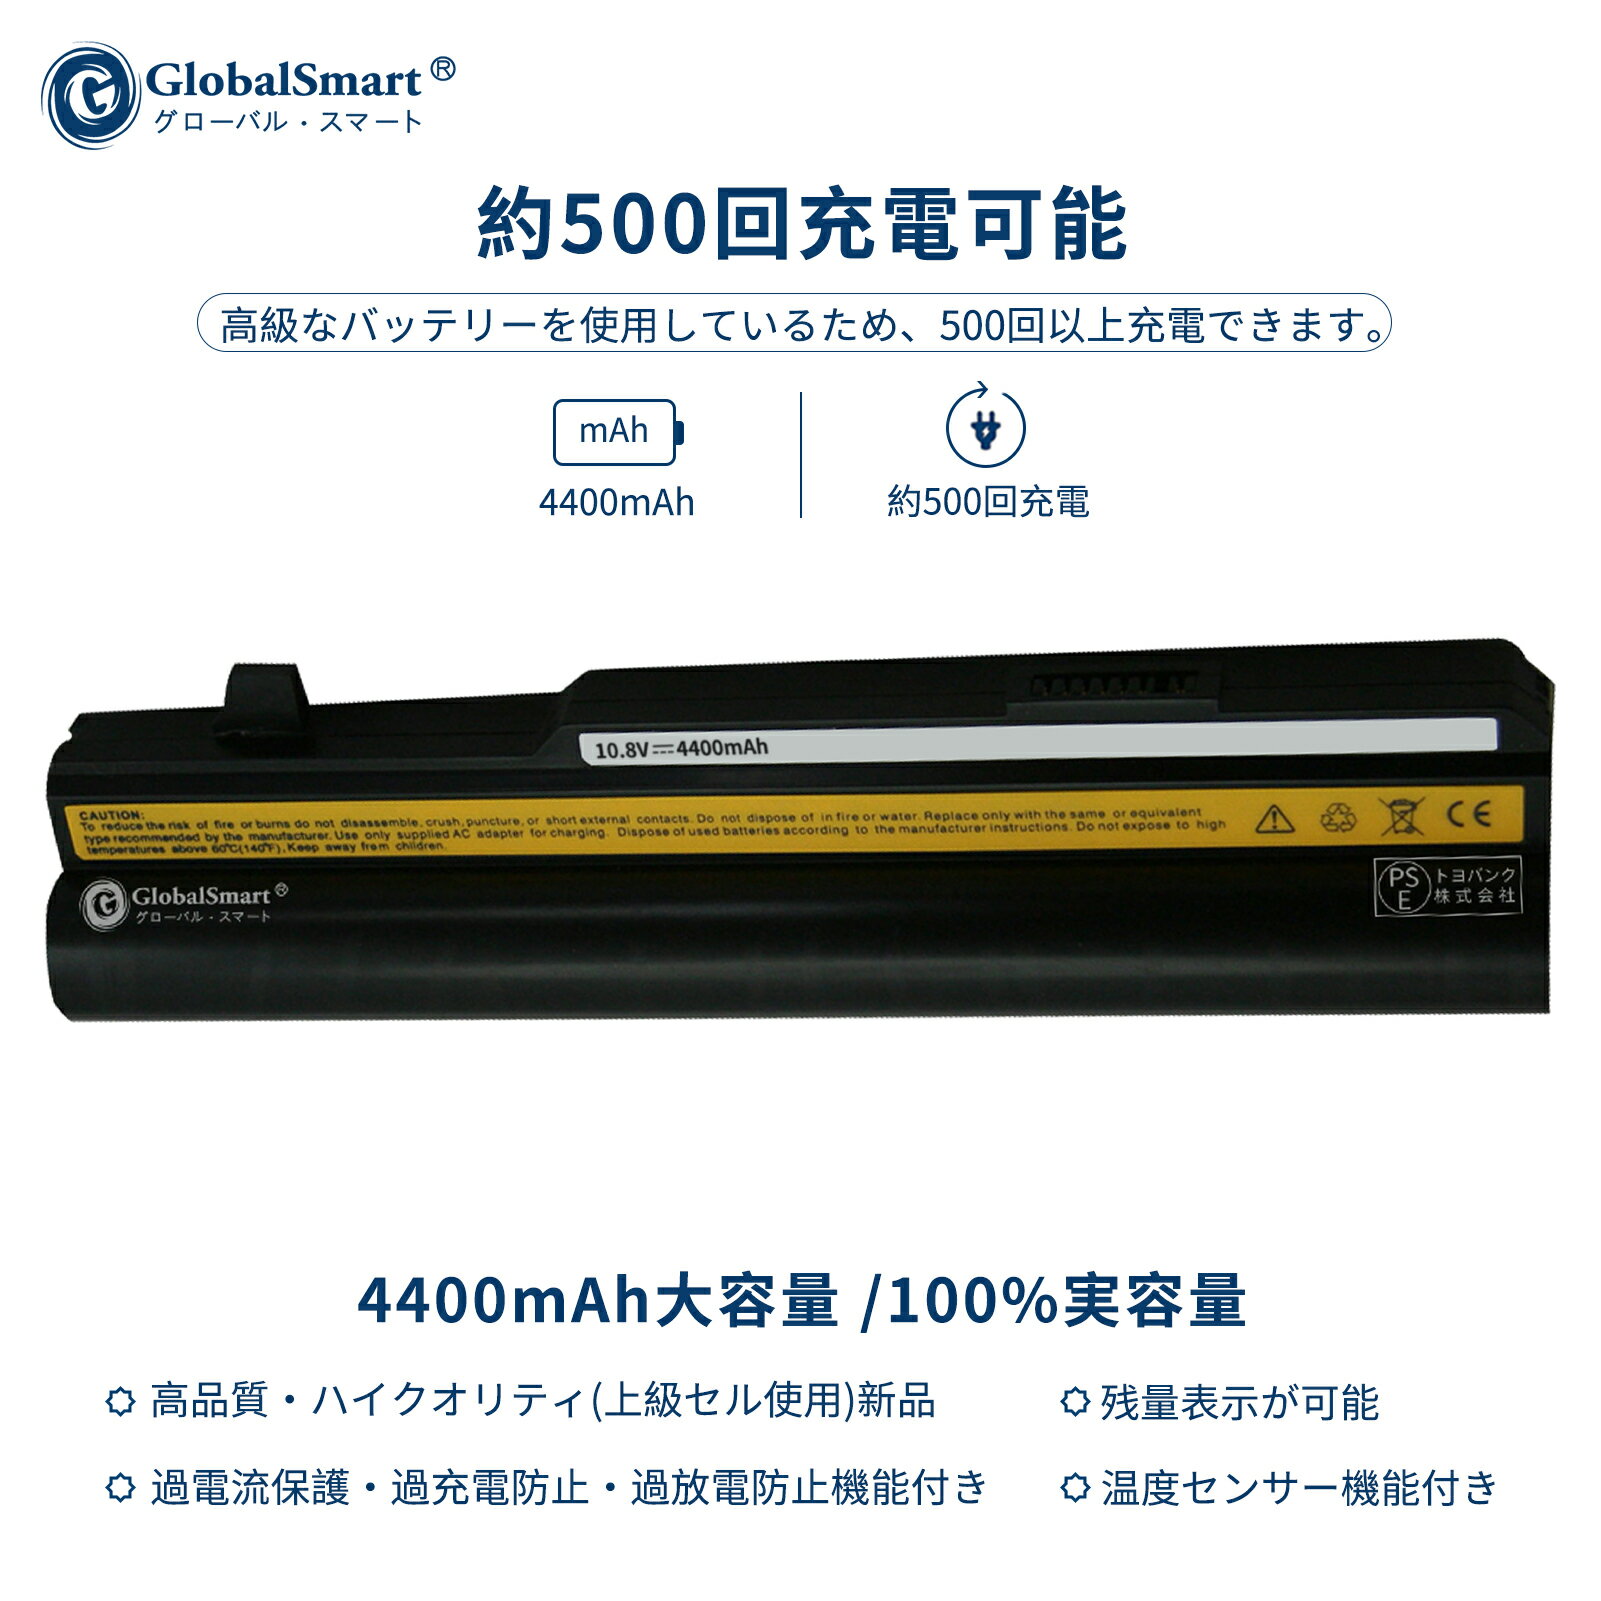 Globalsmart 新品 Lenovo 3000 Y410 互換バッテリー【4400mAh 10.8V】対応用 1年保証 高性能 PSE認証 互換バッテリパック XDY 2